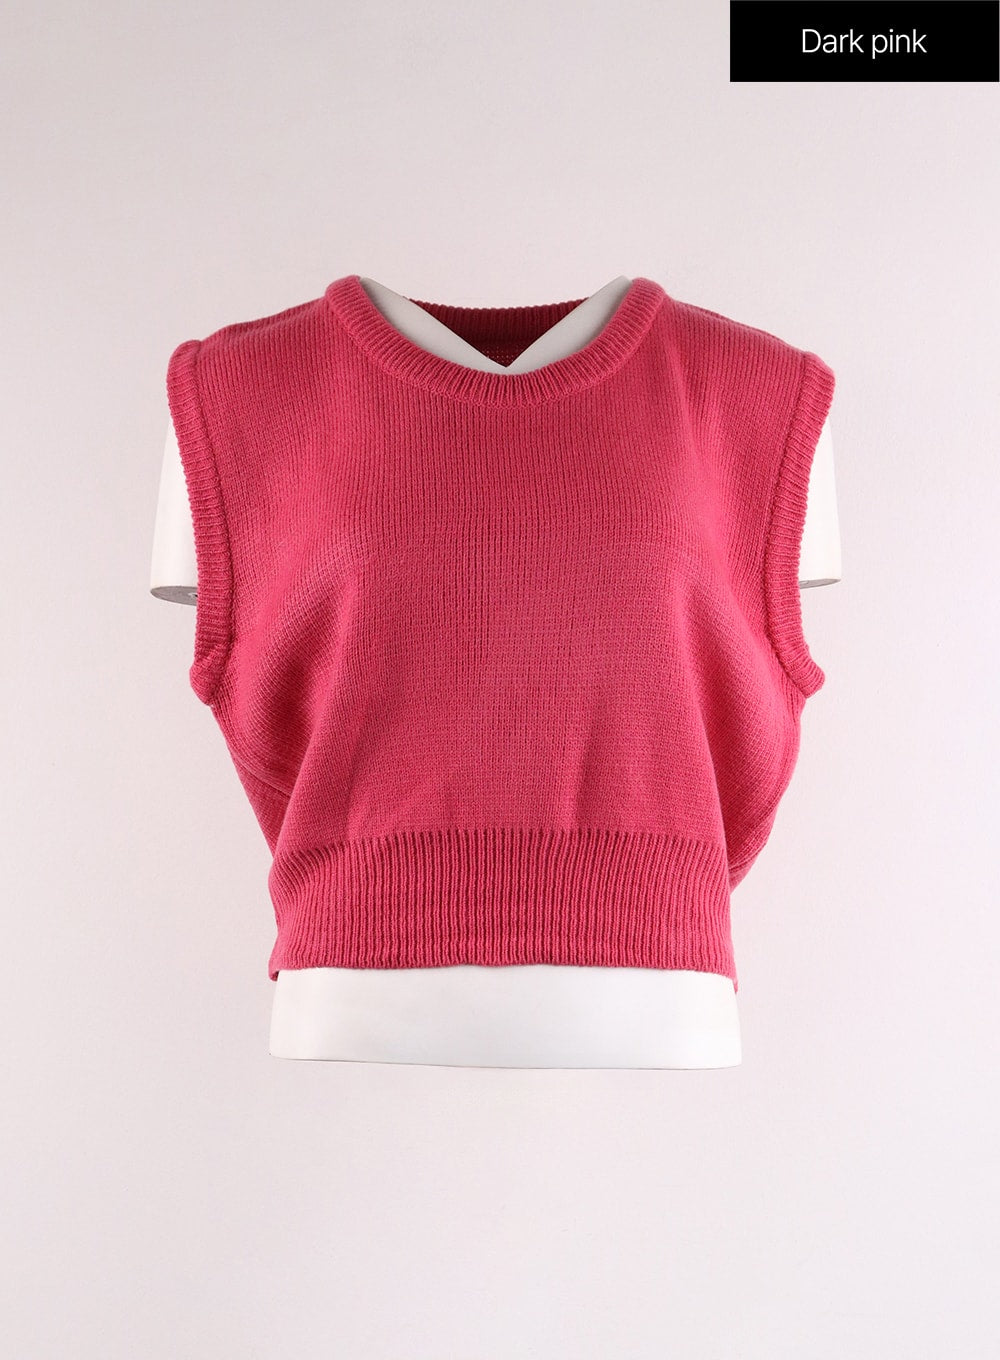 knit-sweater-vest-if402 / Dark pink